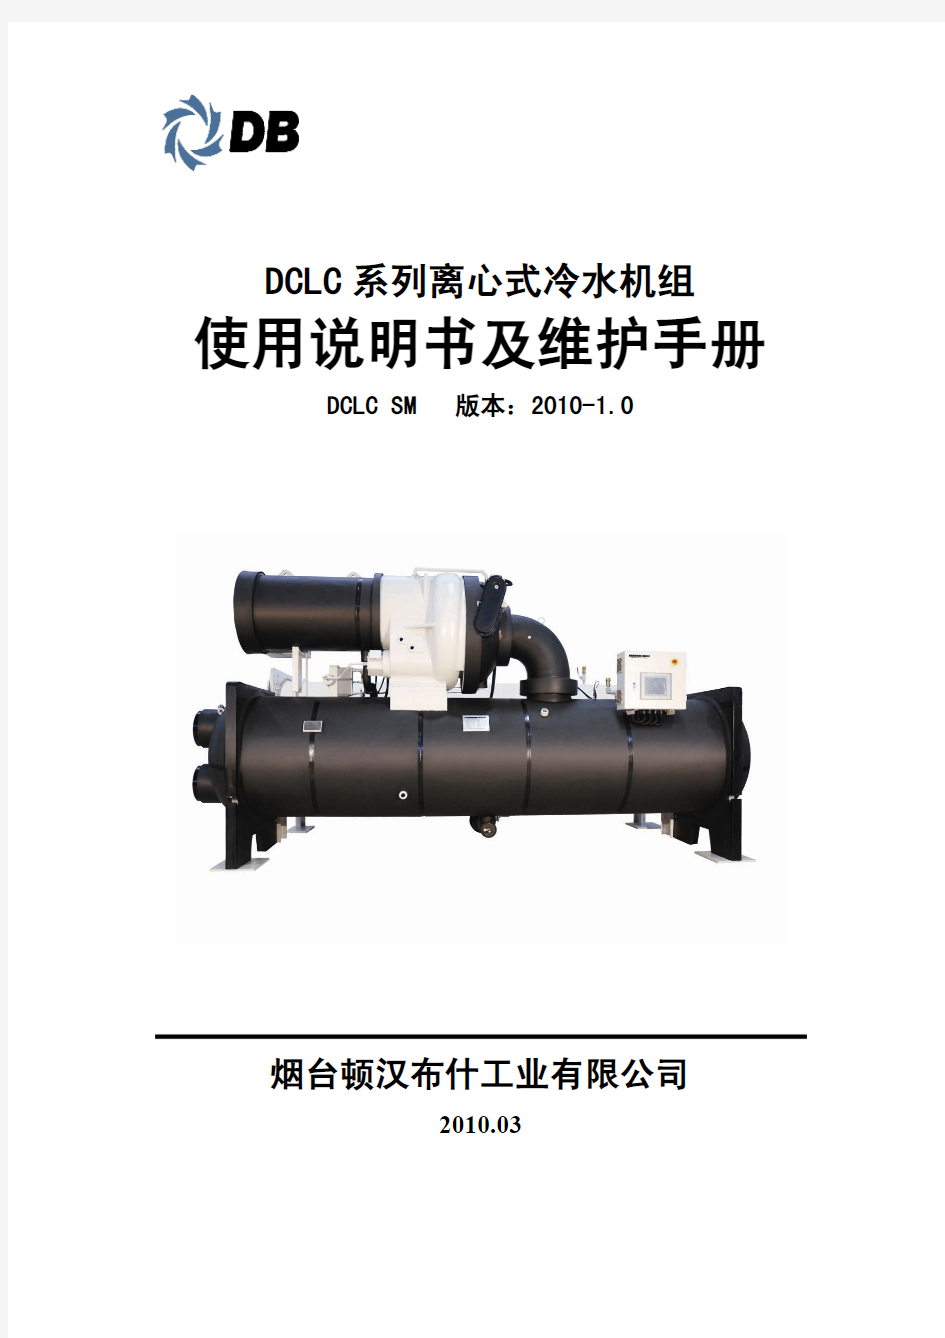 DCLC离心式冷水机组使用说明书及维护手册100507